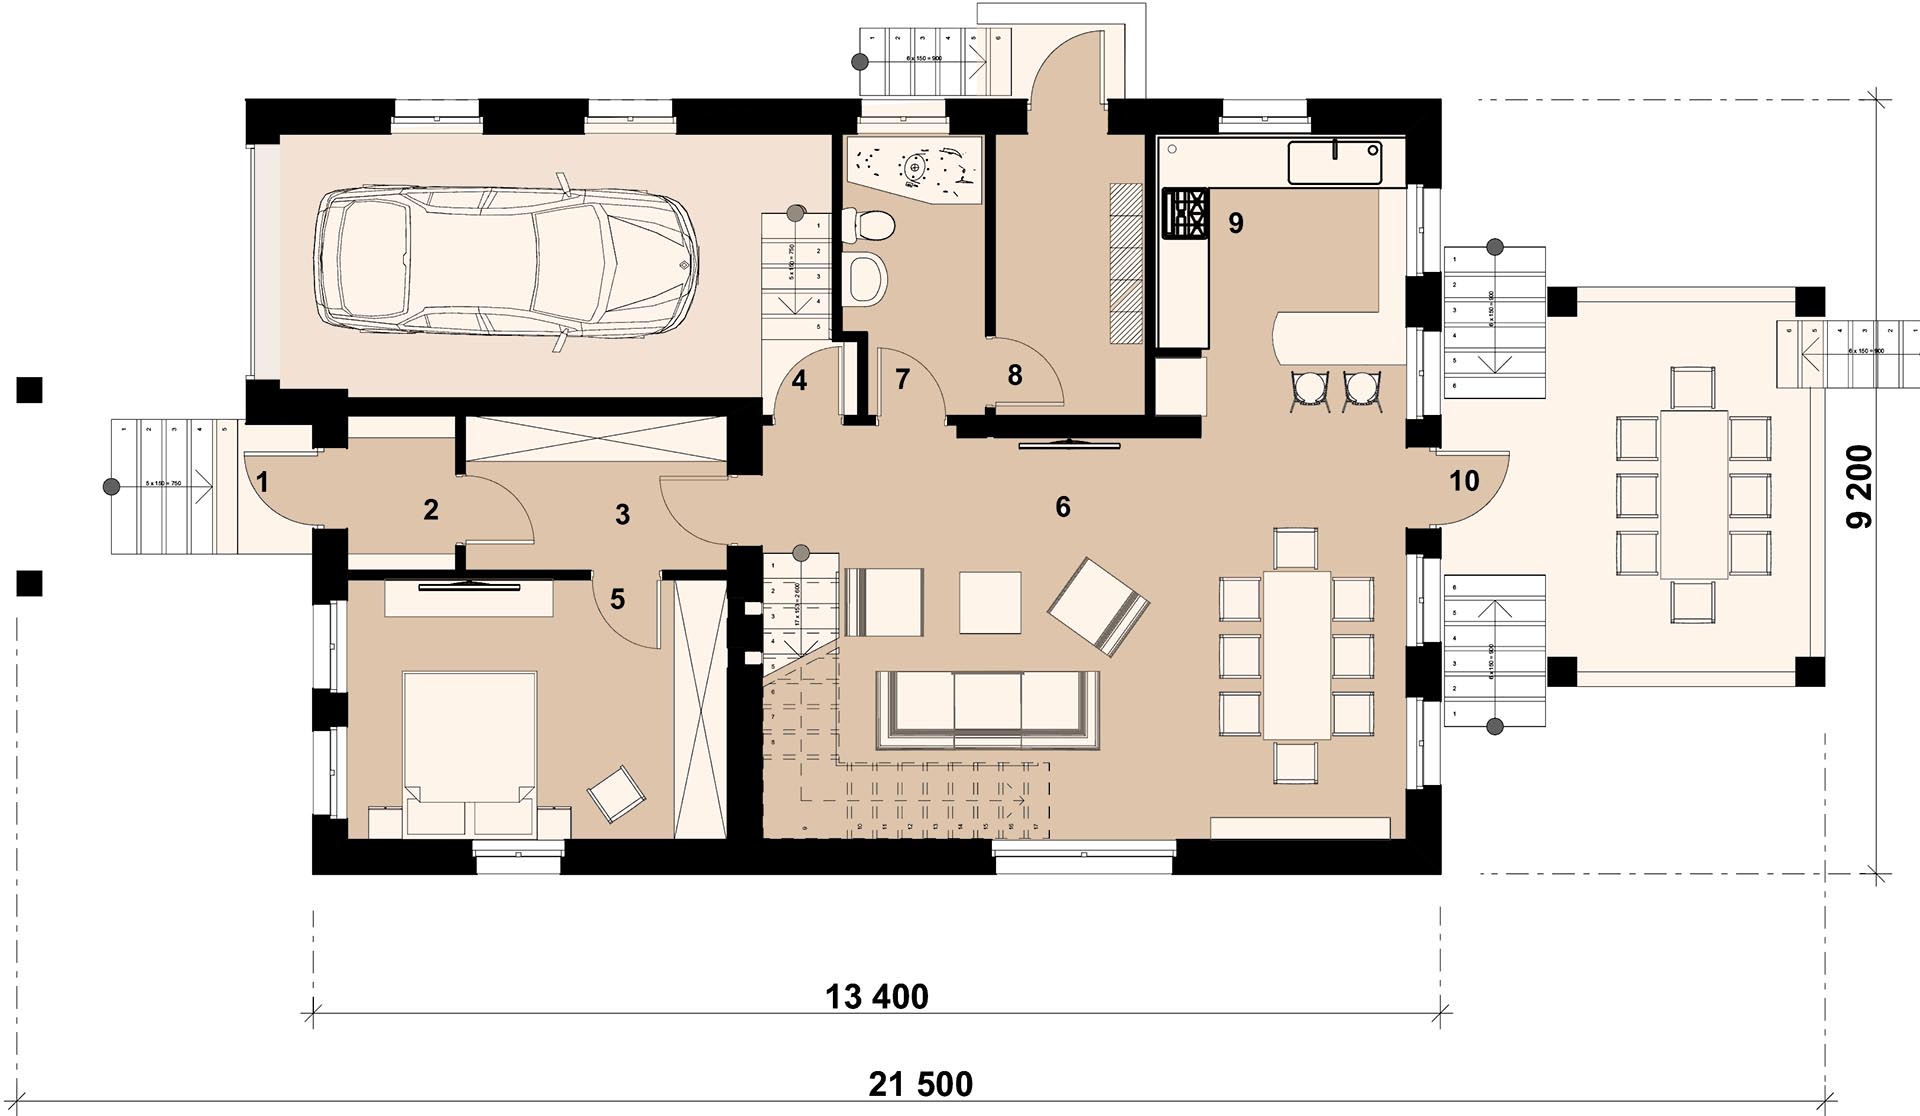 ШАМПАНЬ 131 - план 1-го этажа двухэтажного дома с гаражом- готовый проект от Инваполис